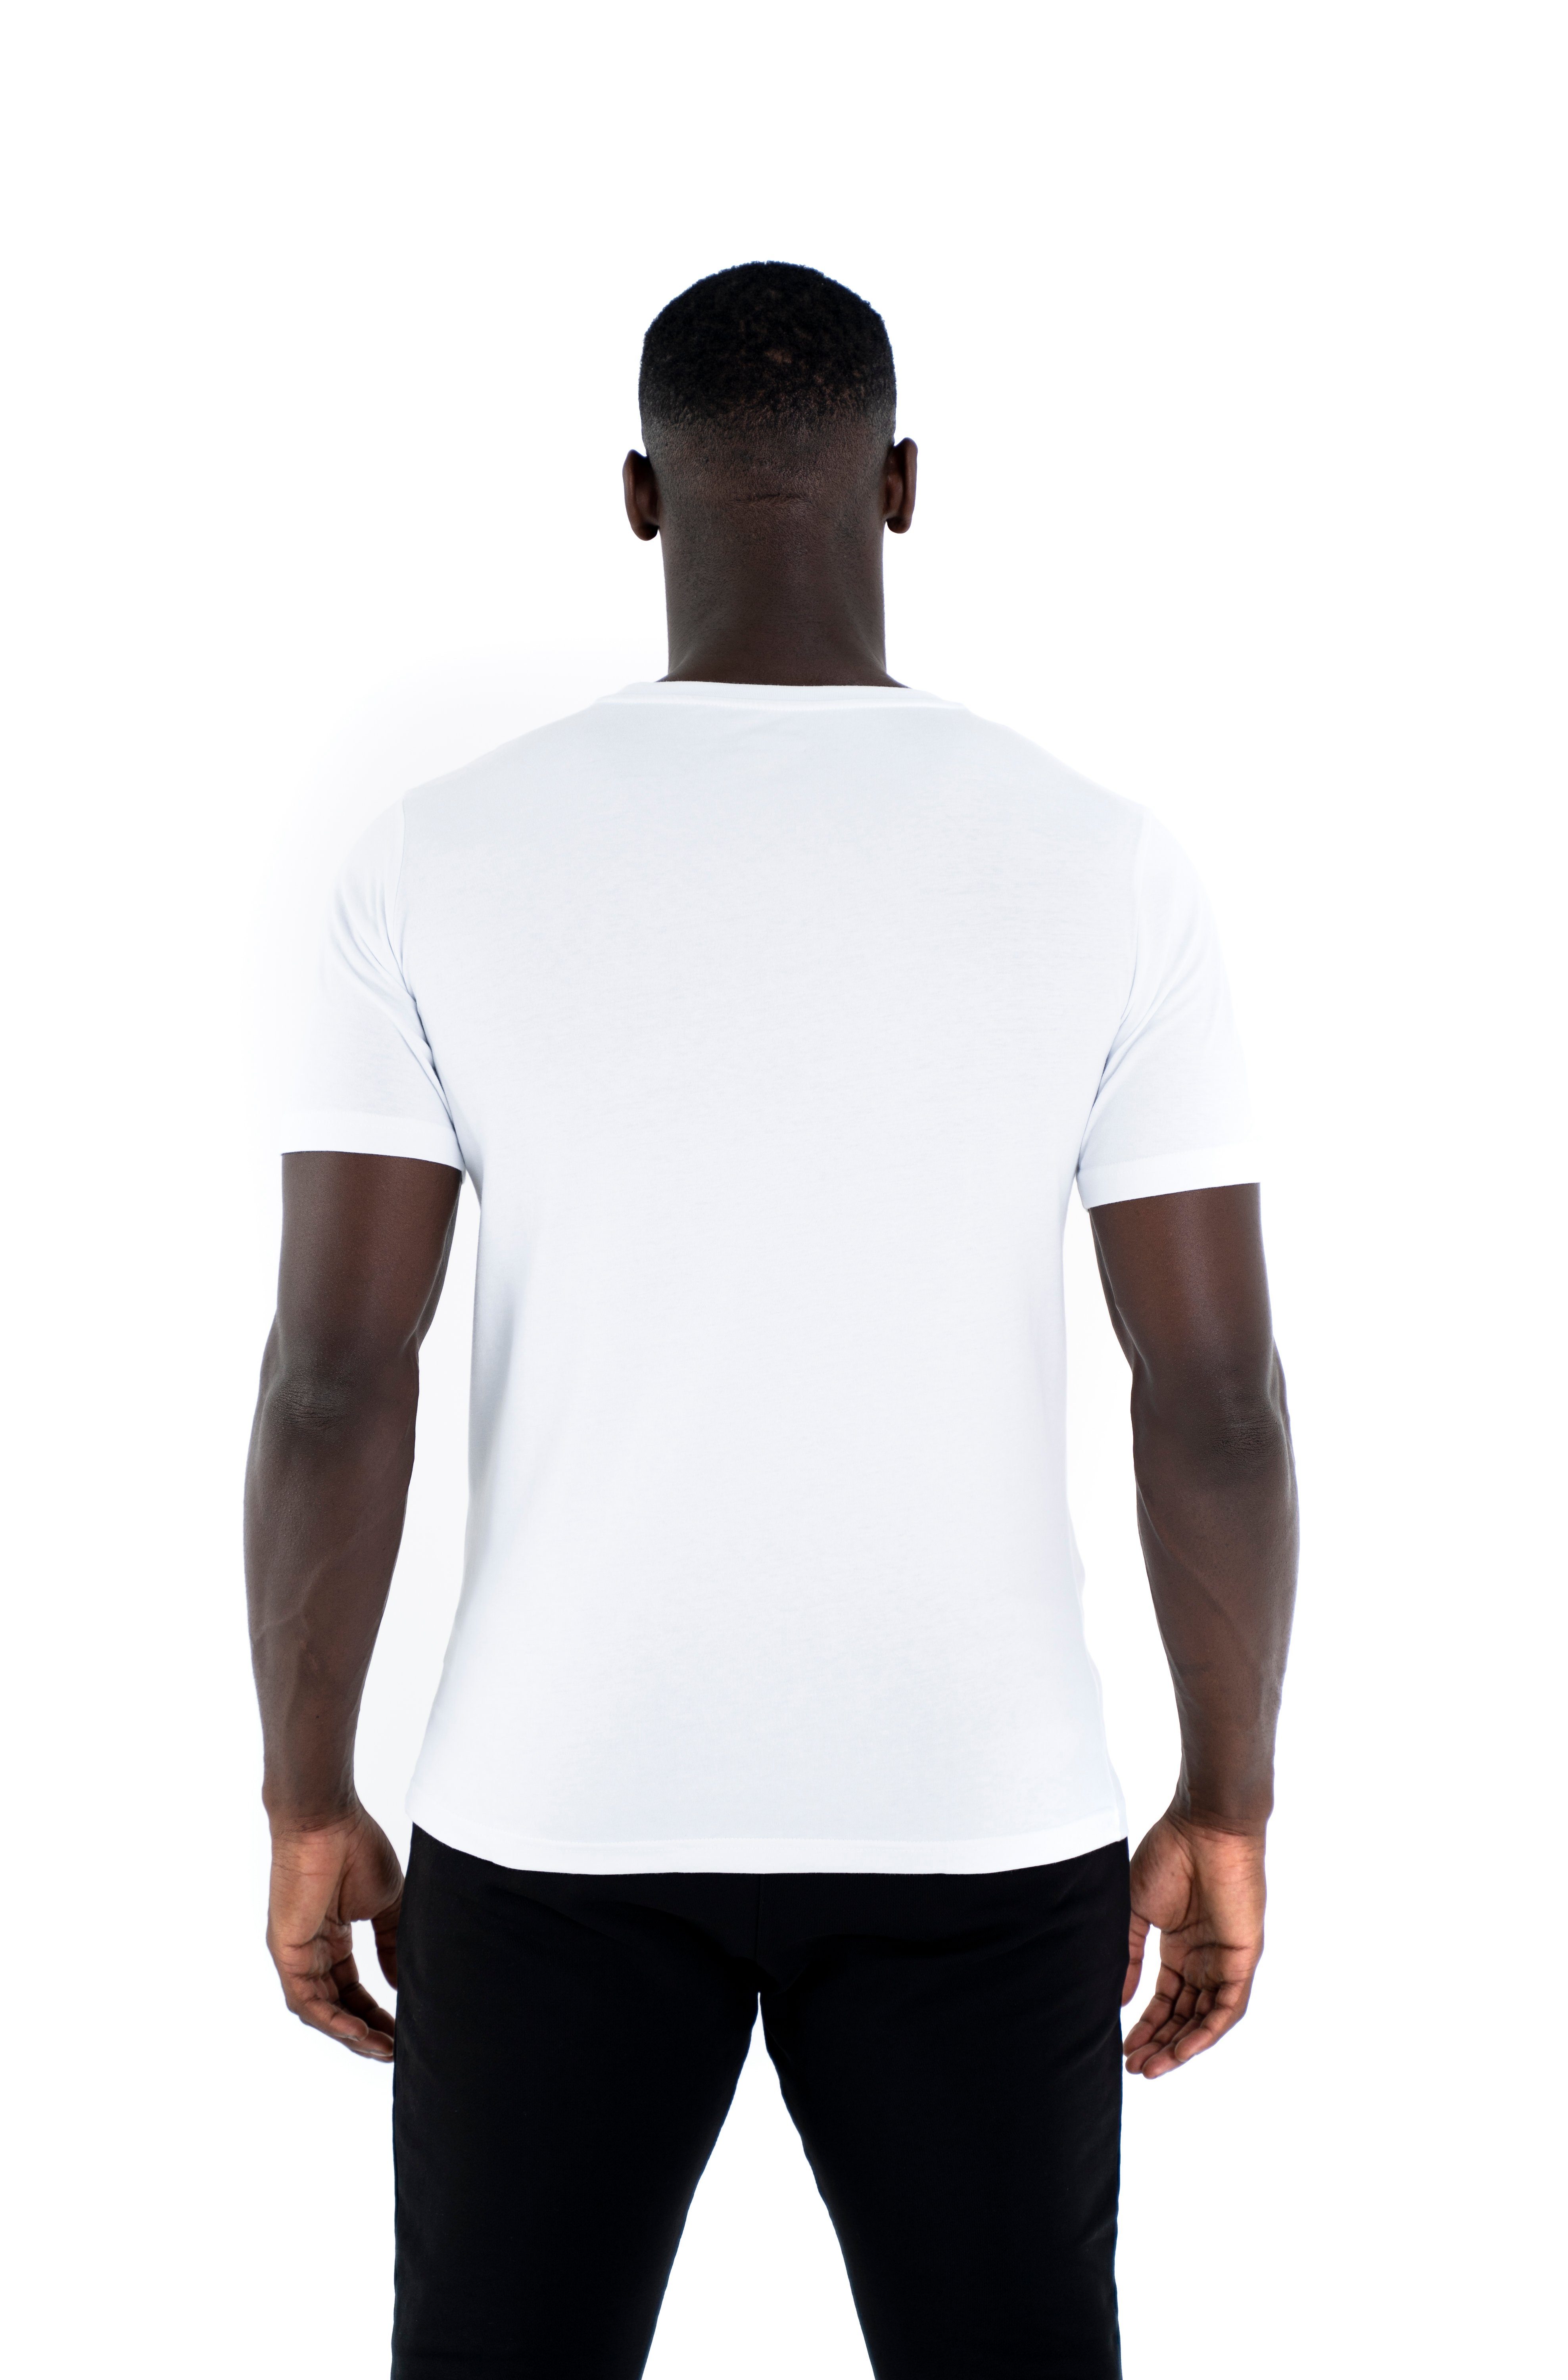 C-Neck Sportwear Cotton Modern weiß Universum Rundhalsausschnitt, Baumwoll Shirt T-Shirt 100%